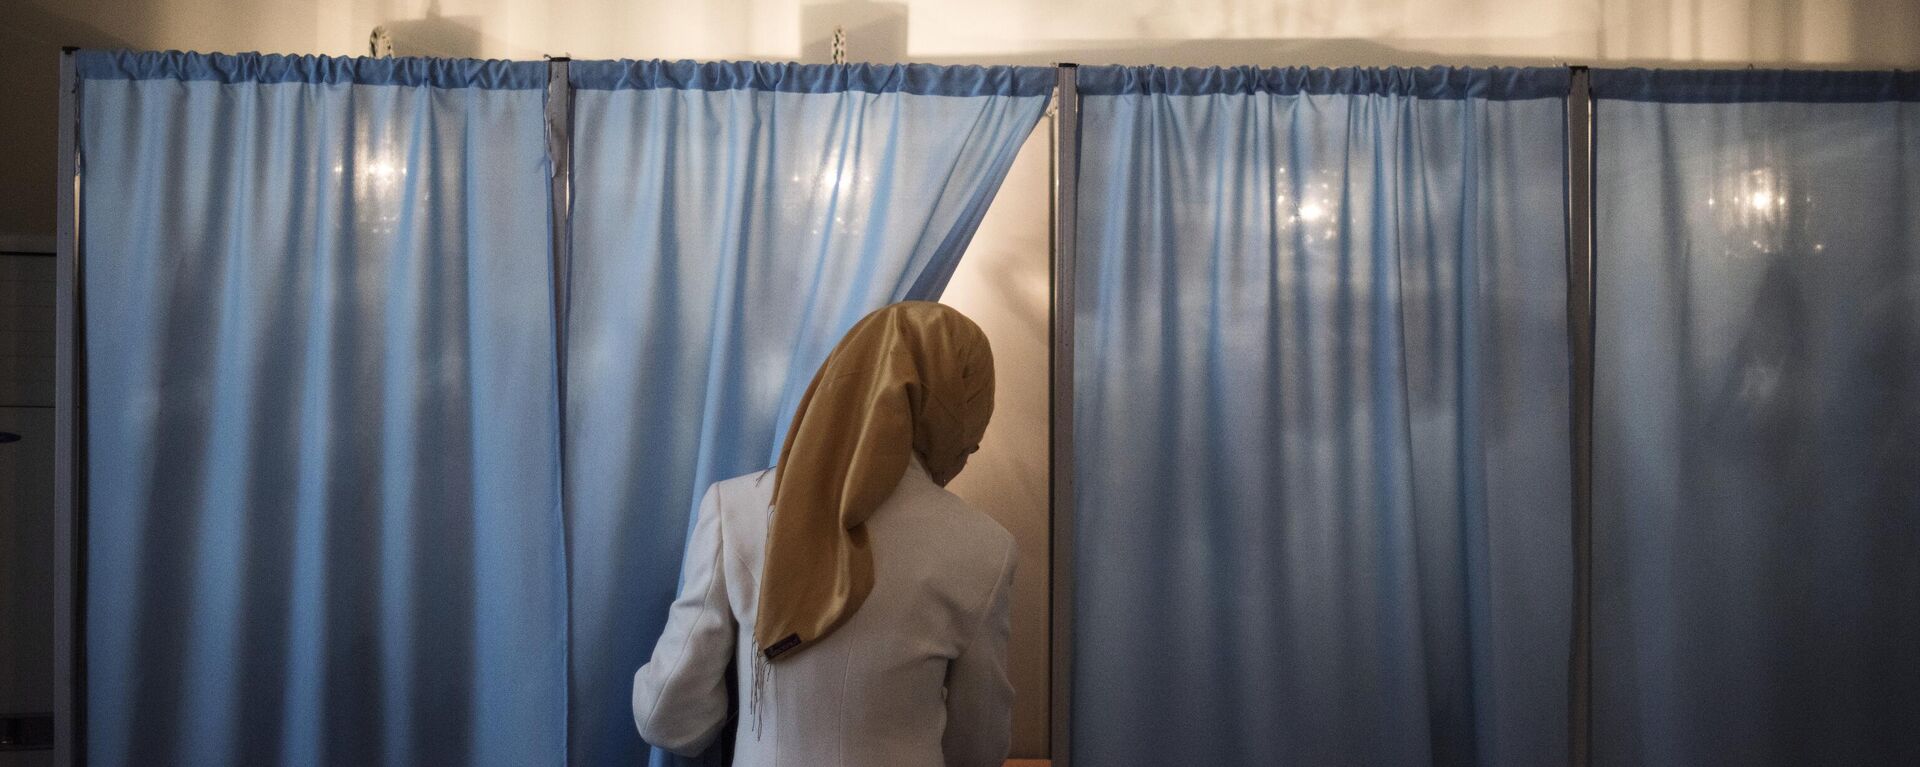 Женщина голосует на избирательном участке во время выборов президента Узбекистана. Архивное фото - Sputnik Узбекистан, 1920, 26.09.2021